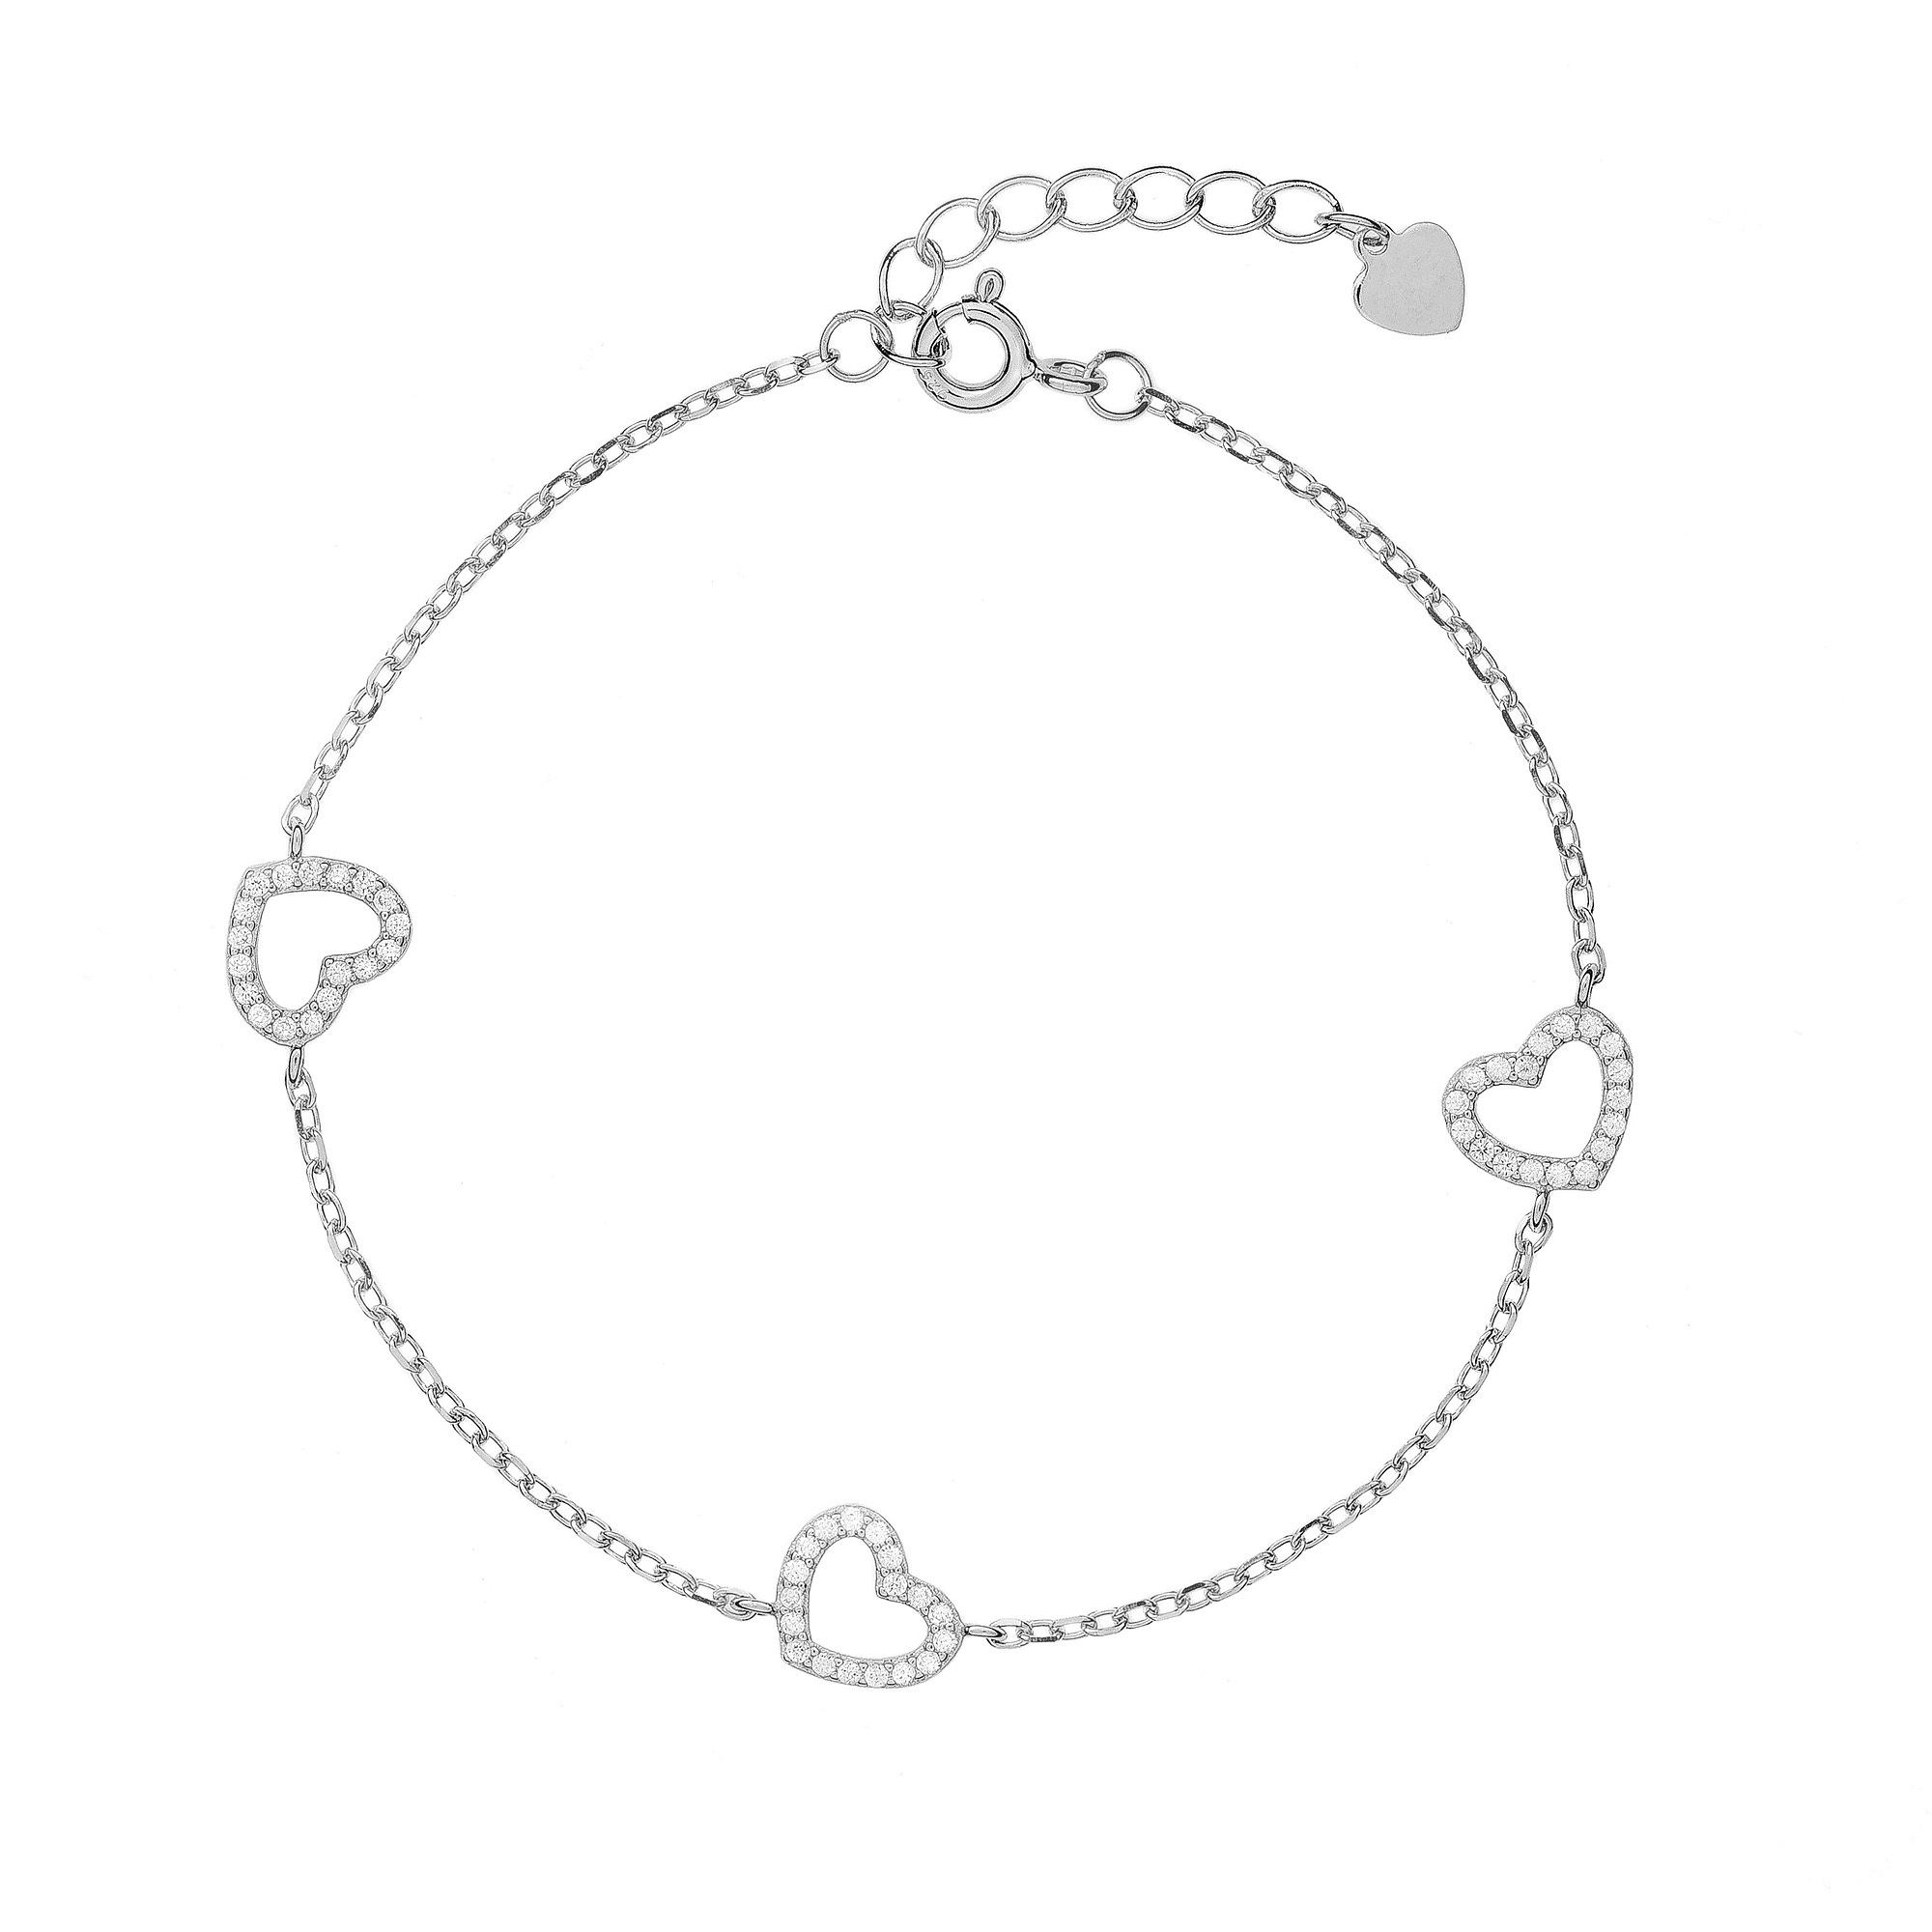 AGAIN Jewelry Romantický strieborný náramok so srdiečkami AJNR0021